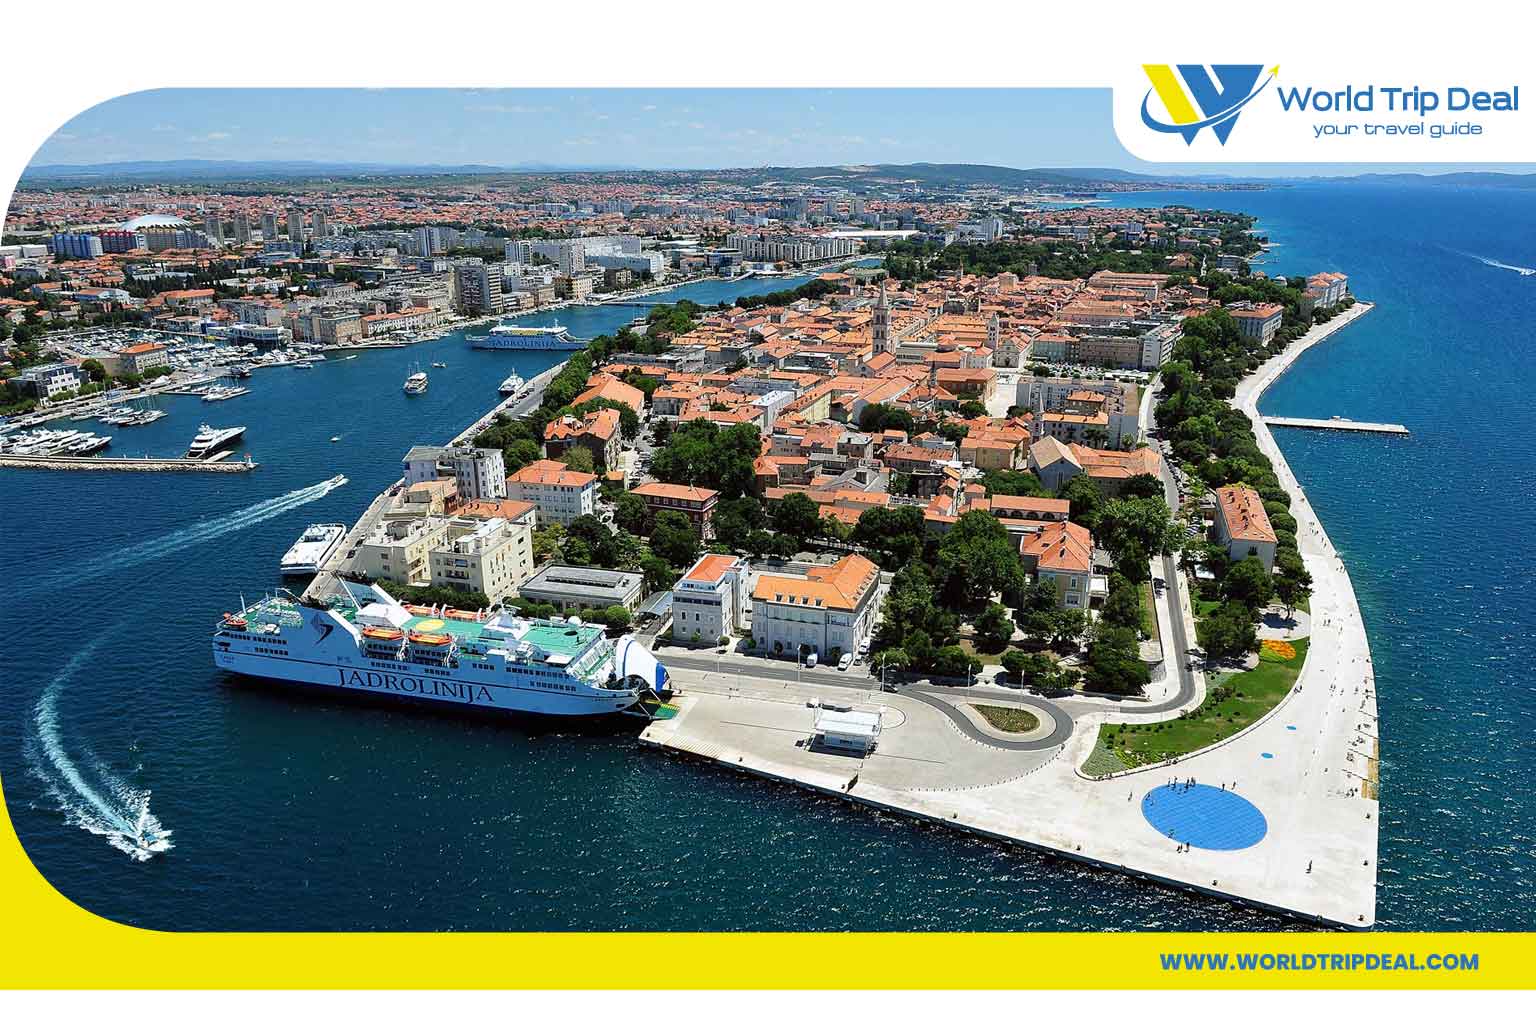 السياحة في كرواتيا- سبليت - كرواتيا المدن الساحلية والجزر ذات المناظر الخلابة - ورلد تريب ديل